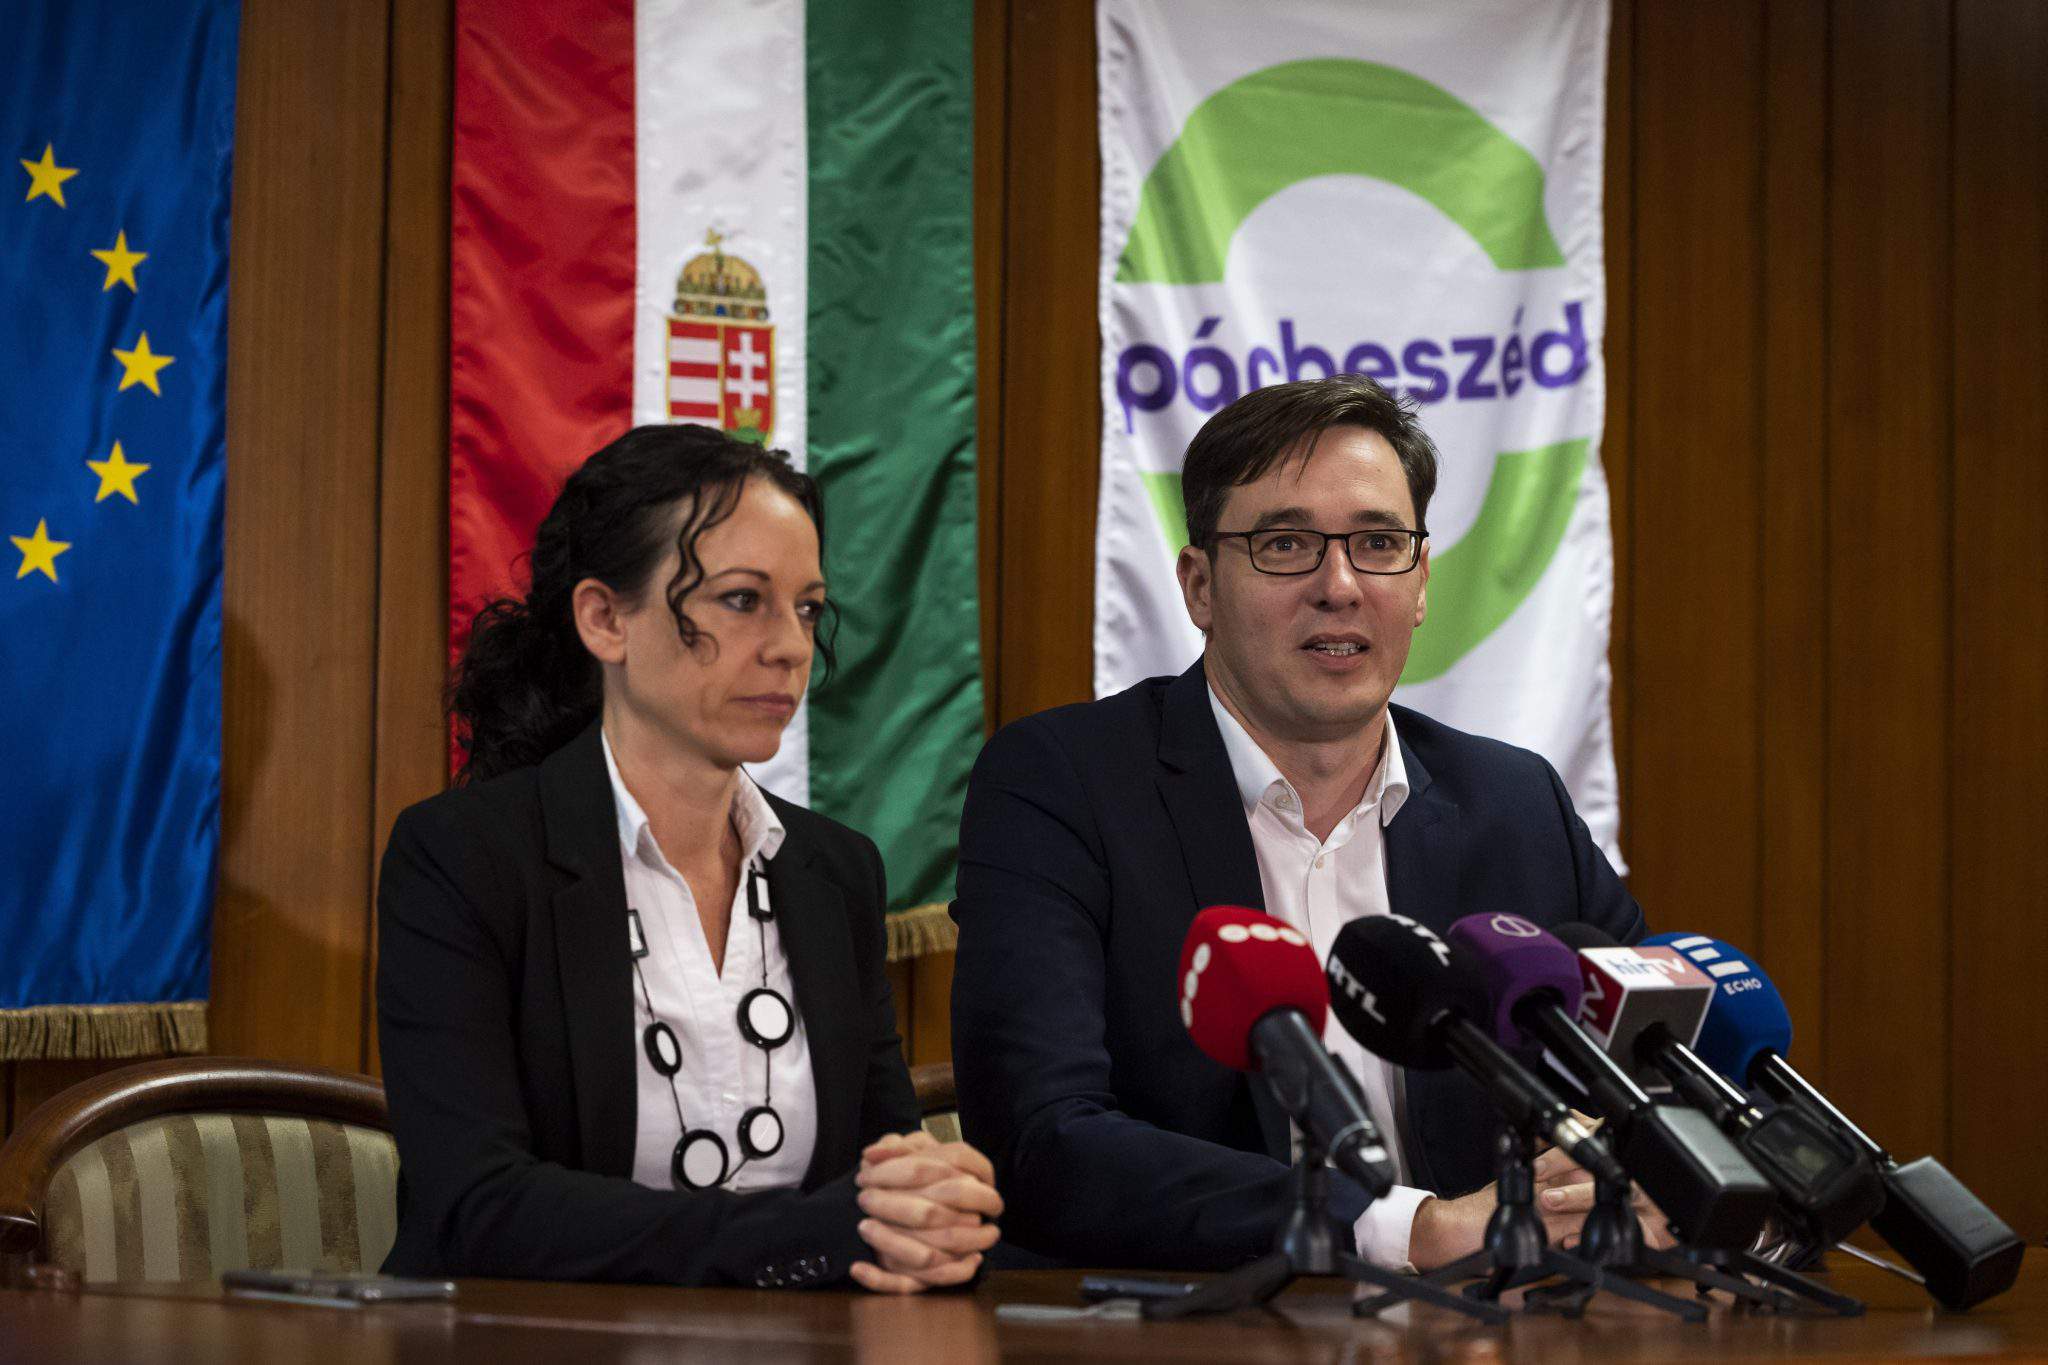 Párbeszéd Hungary opposition